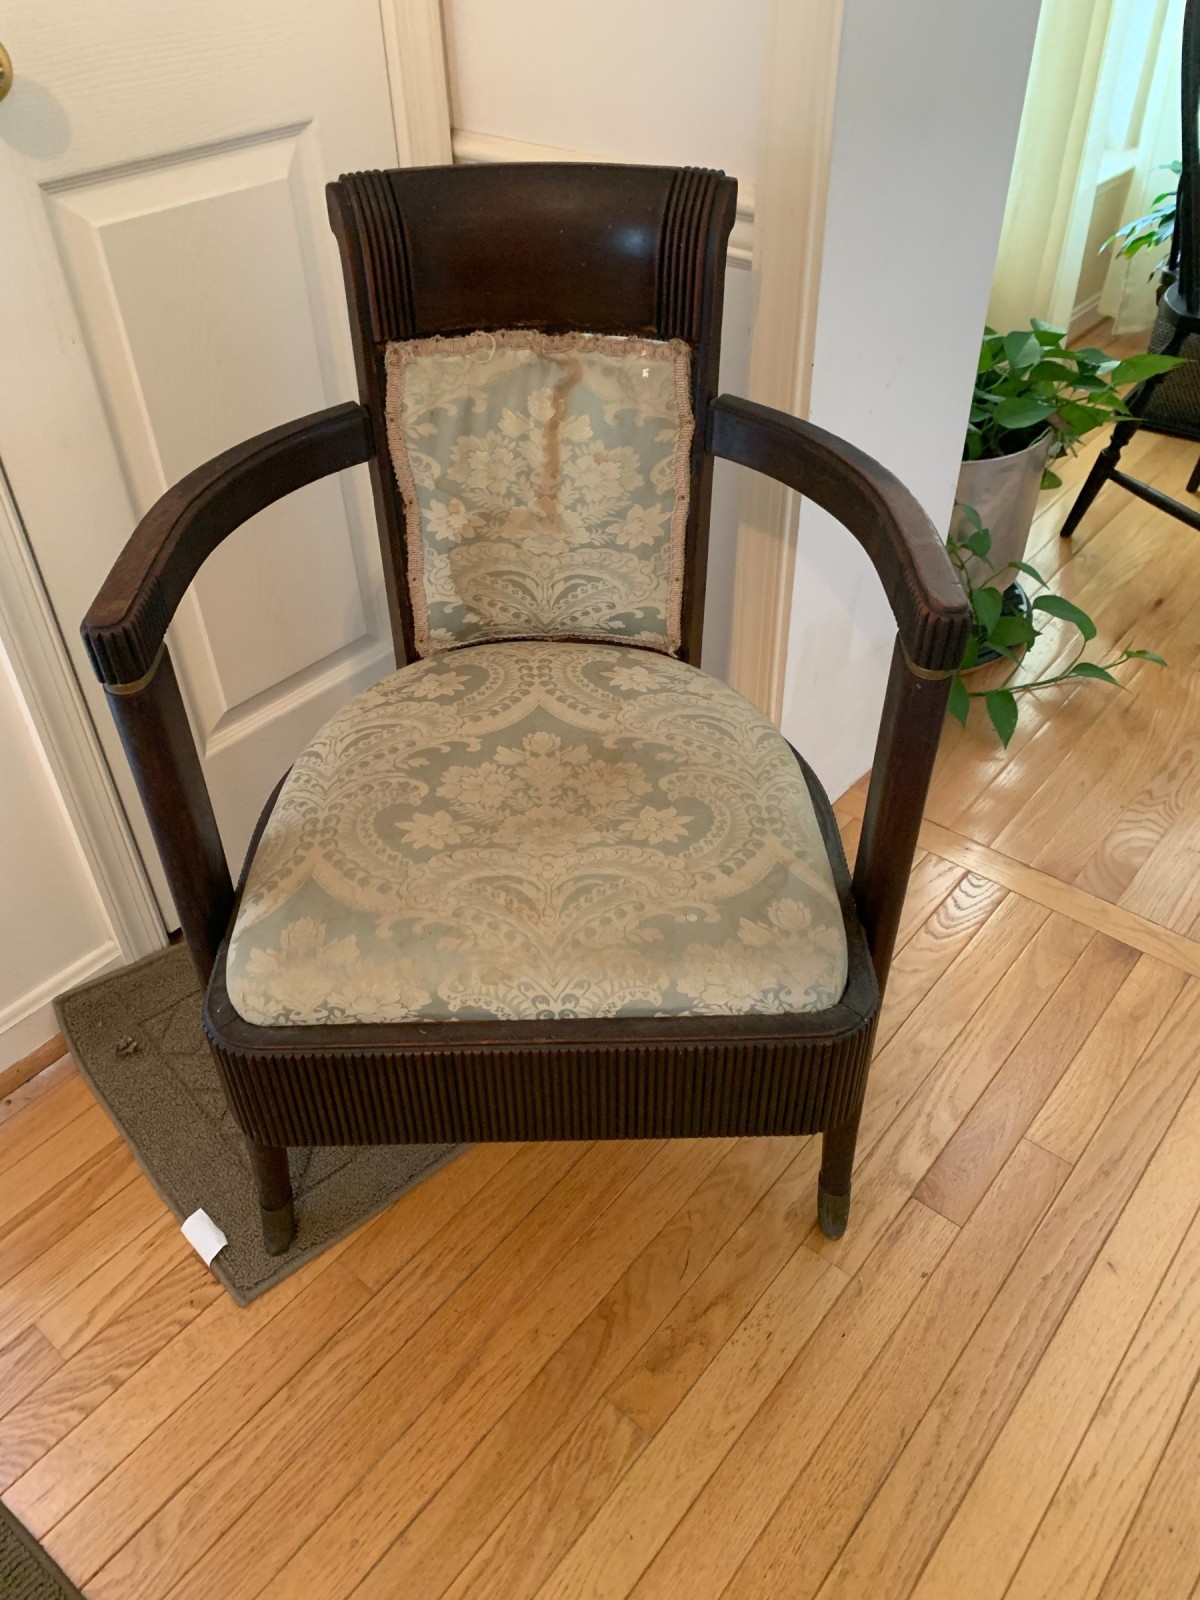 Identifying an Antique Wooden Barrel Chair? | ThriftyFun